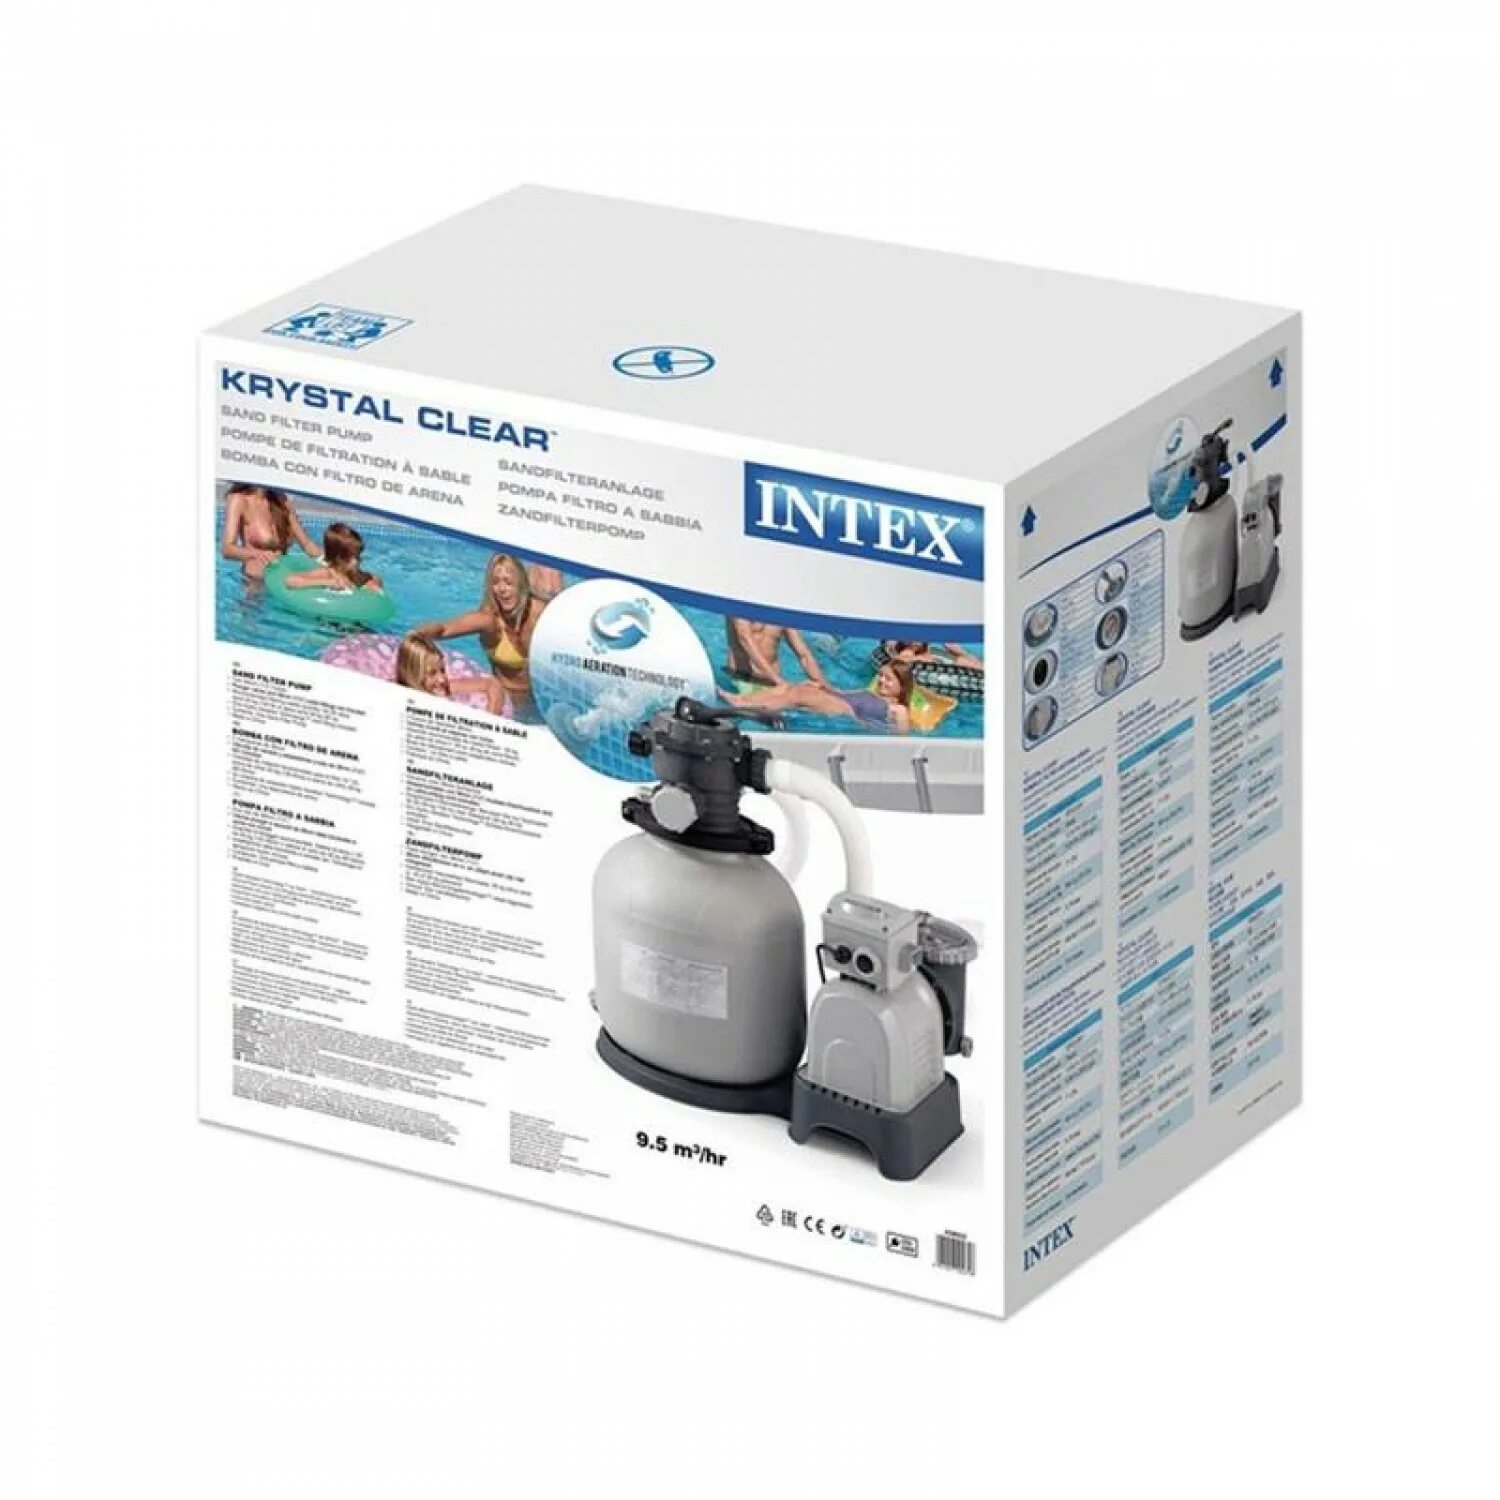 Песочный фильтр Intex 28646. Песочный насос-фильтр Intex 26642 2000 л/ч. Песочный фильтр для бассейна Intex sf60220. Песочный фильтр для бассейна Intex sf15220.